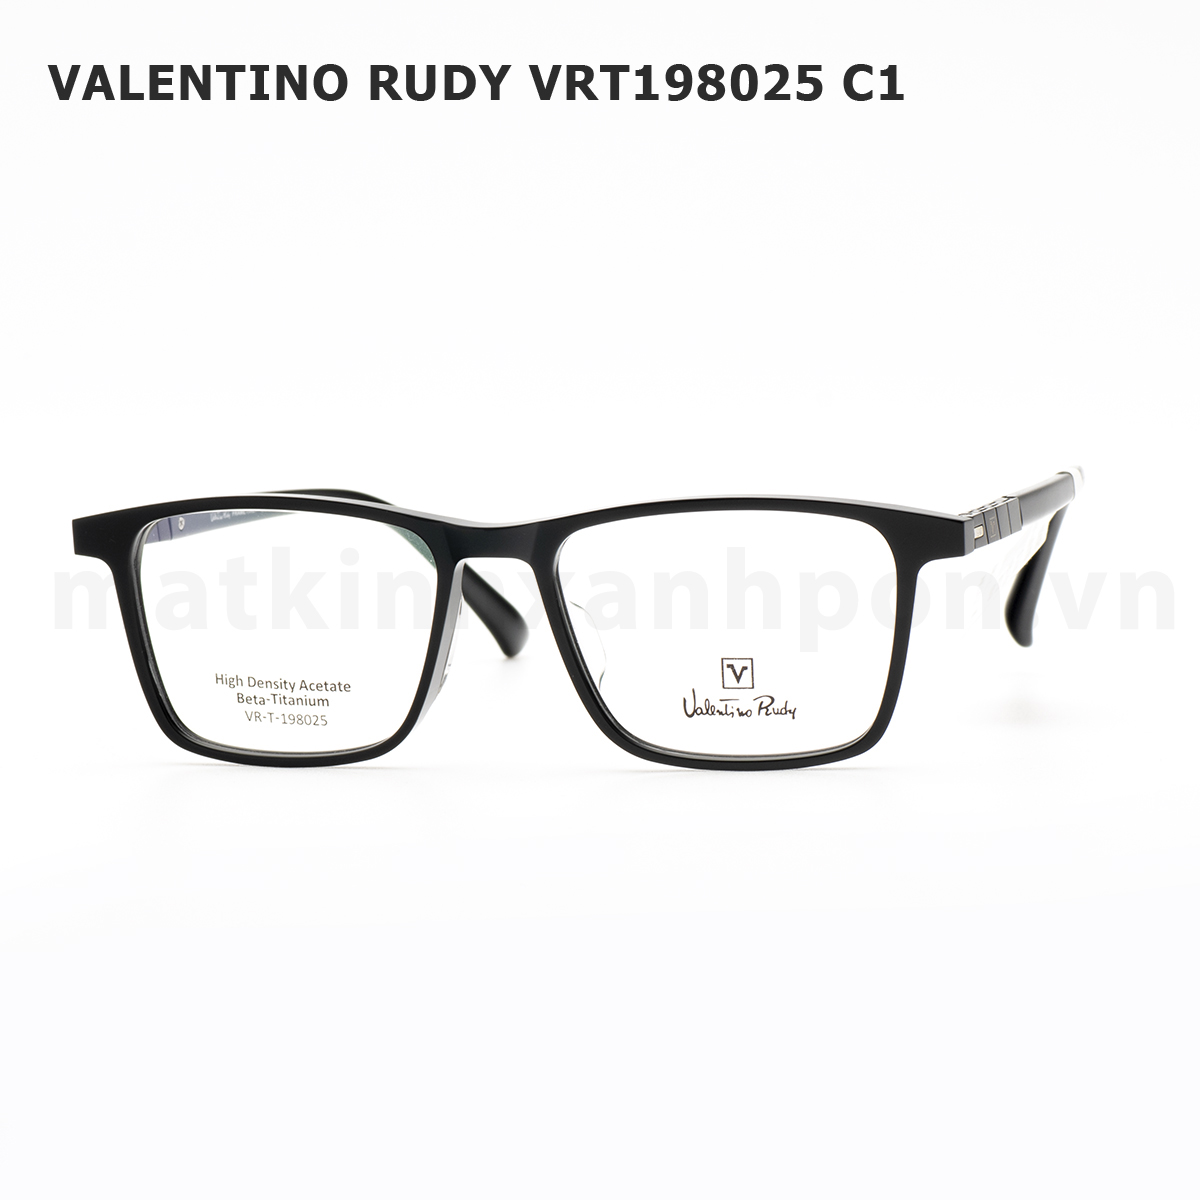 Valentino Rudy VRT198025 C1